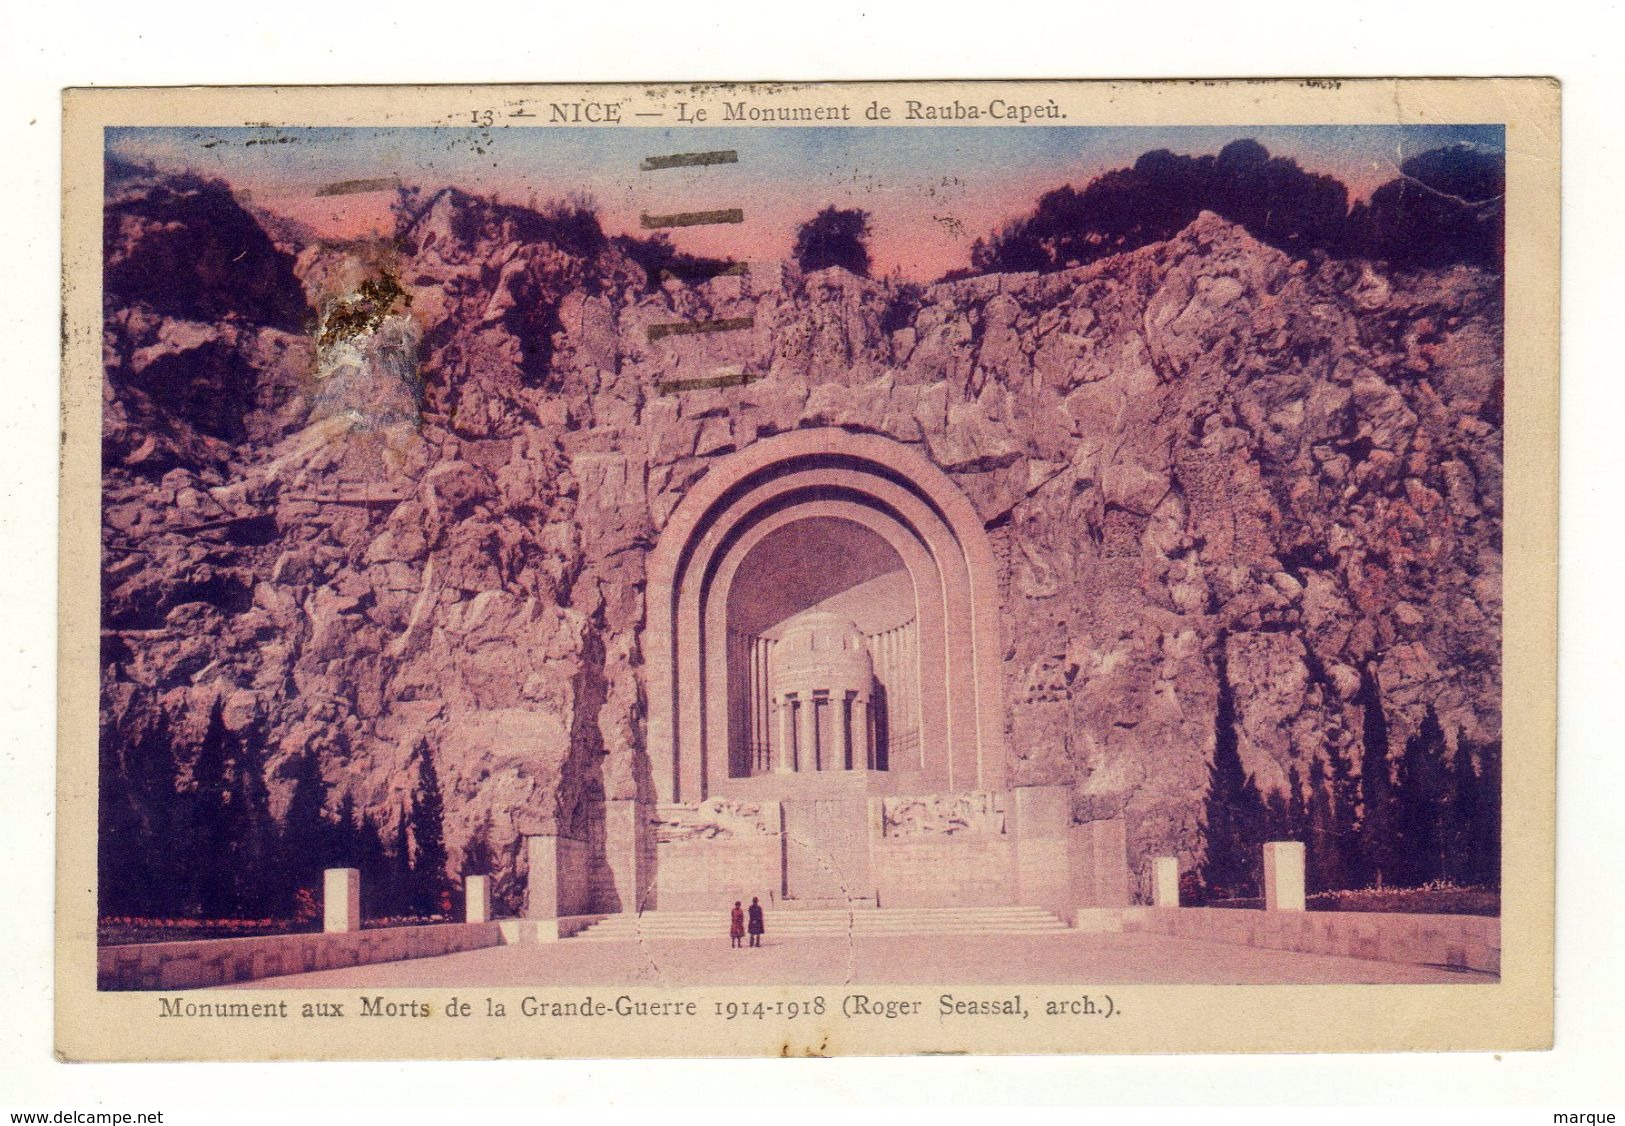 Cpa N° 13 NICE Le Monument De Rauba Capeu Monument Aux Morts De La Grande Guerre 1914 1918 - Monuments, édifices